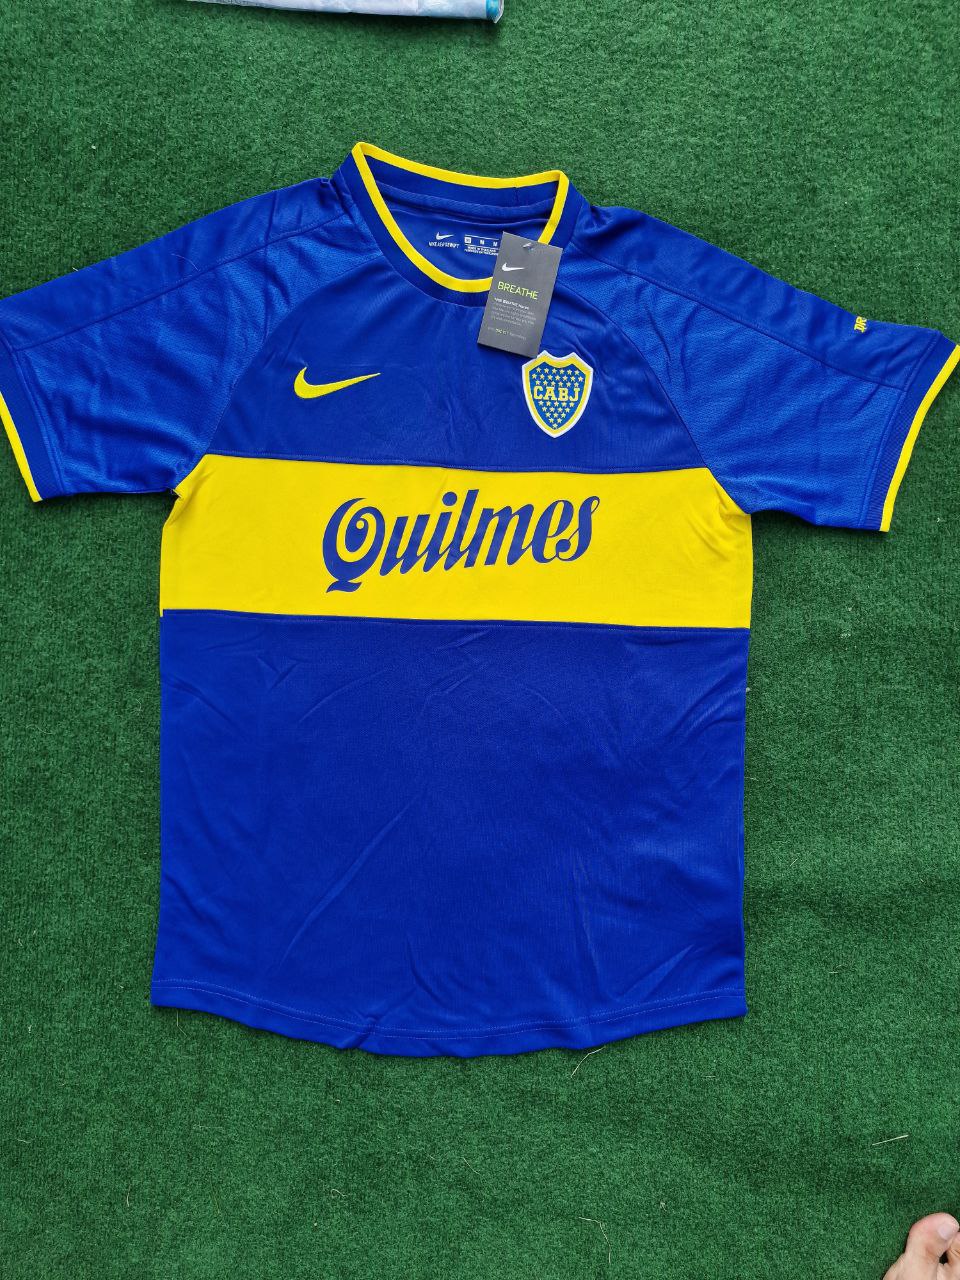 Riquelme CA Boca Juniors Retro Football Jersey